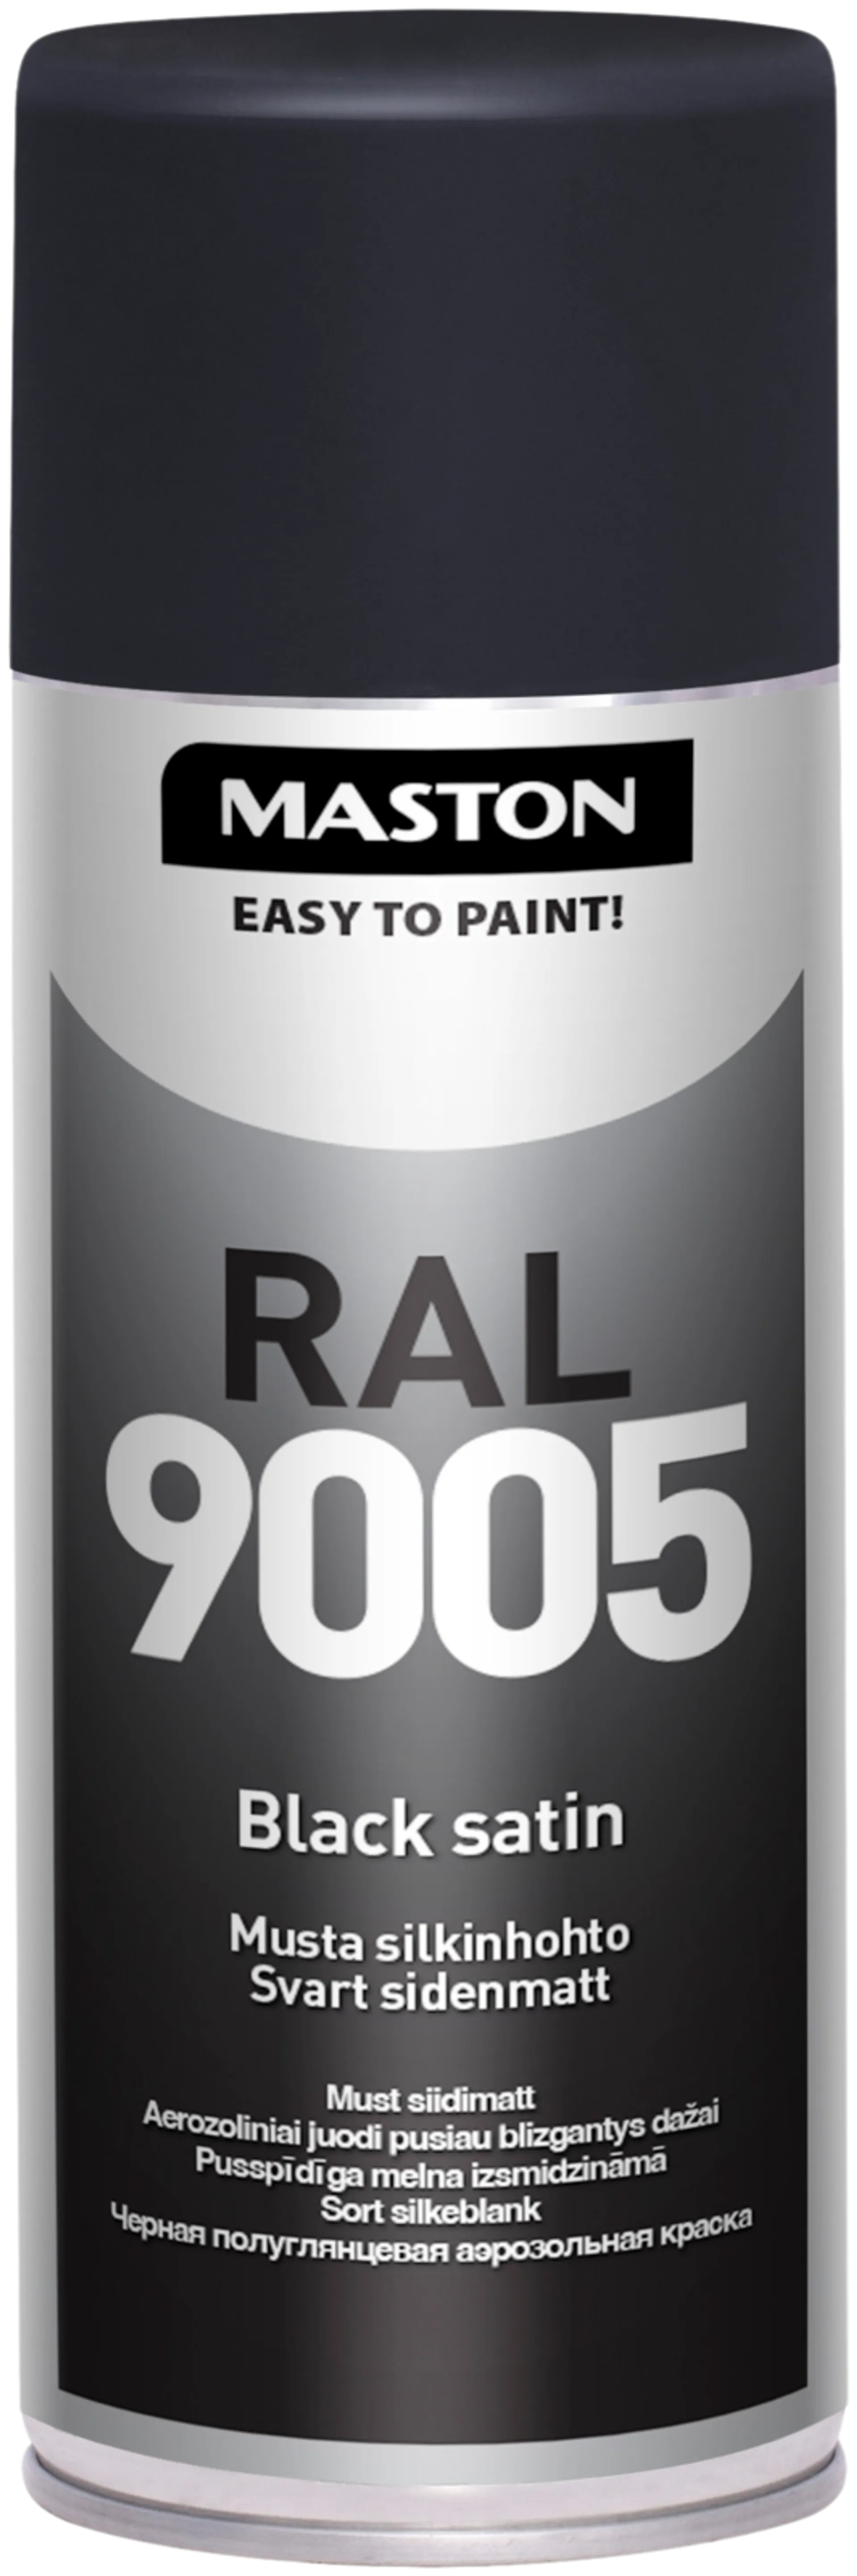 Maston Effect spraymaali silkinhohto 400ml musta RAL 9005